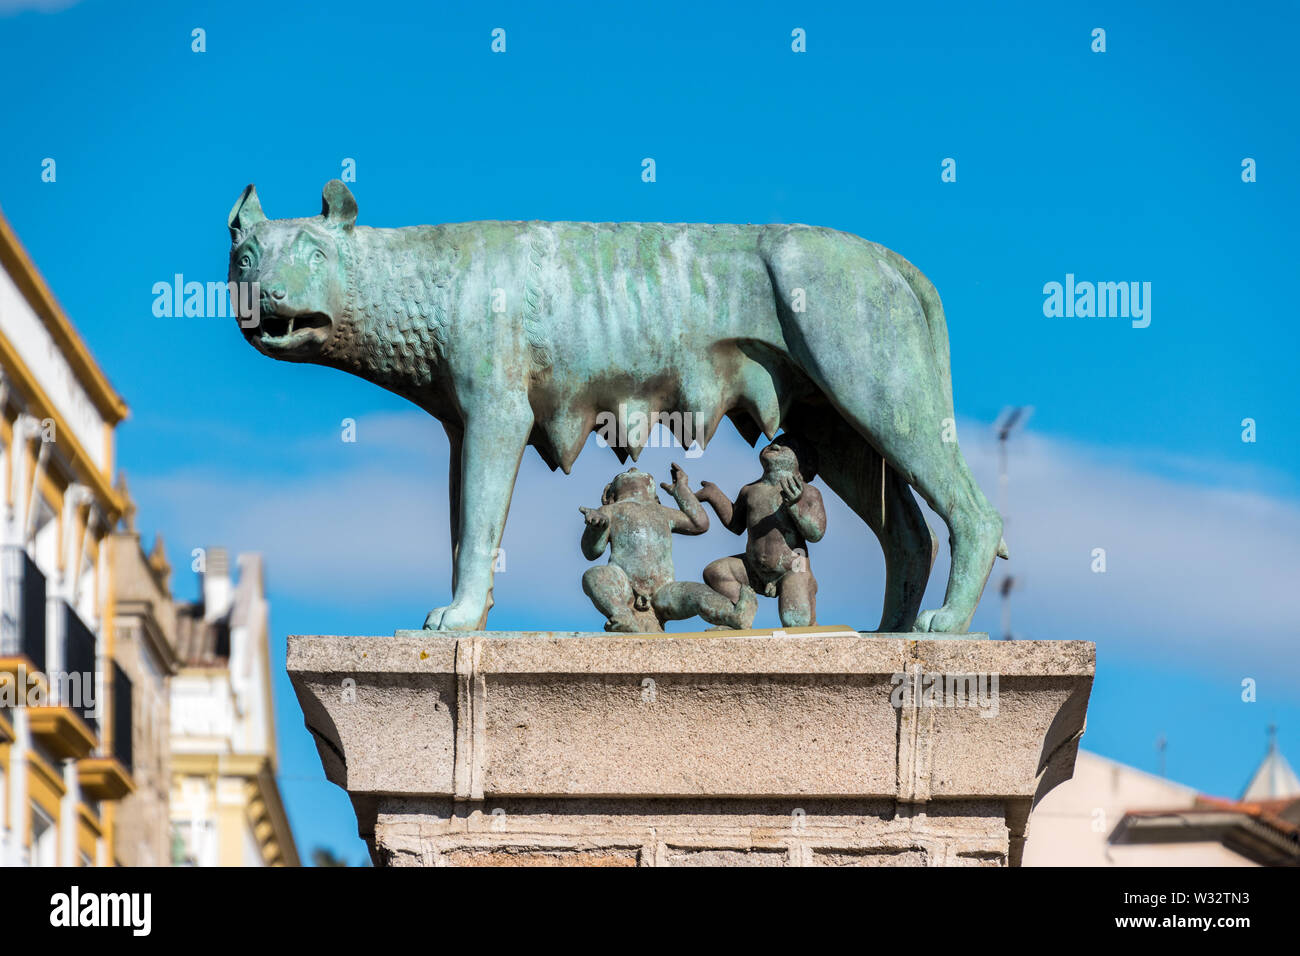 Une statue de Romulus et Remus à partir de la mythologie romaine à Mérida, Espagne Banque D'Images